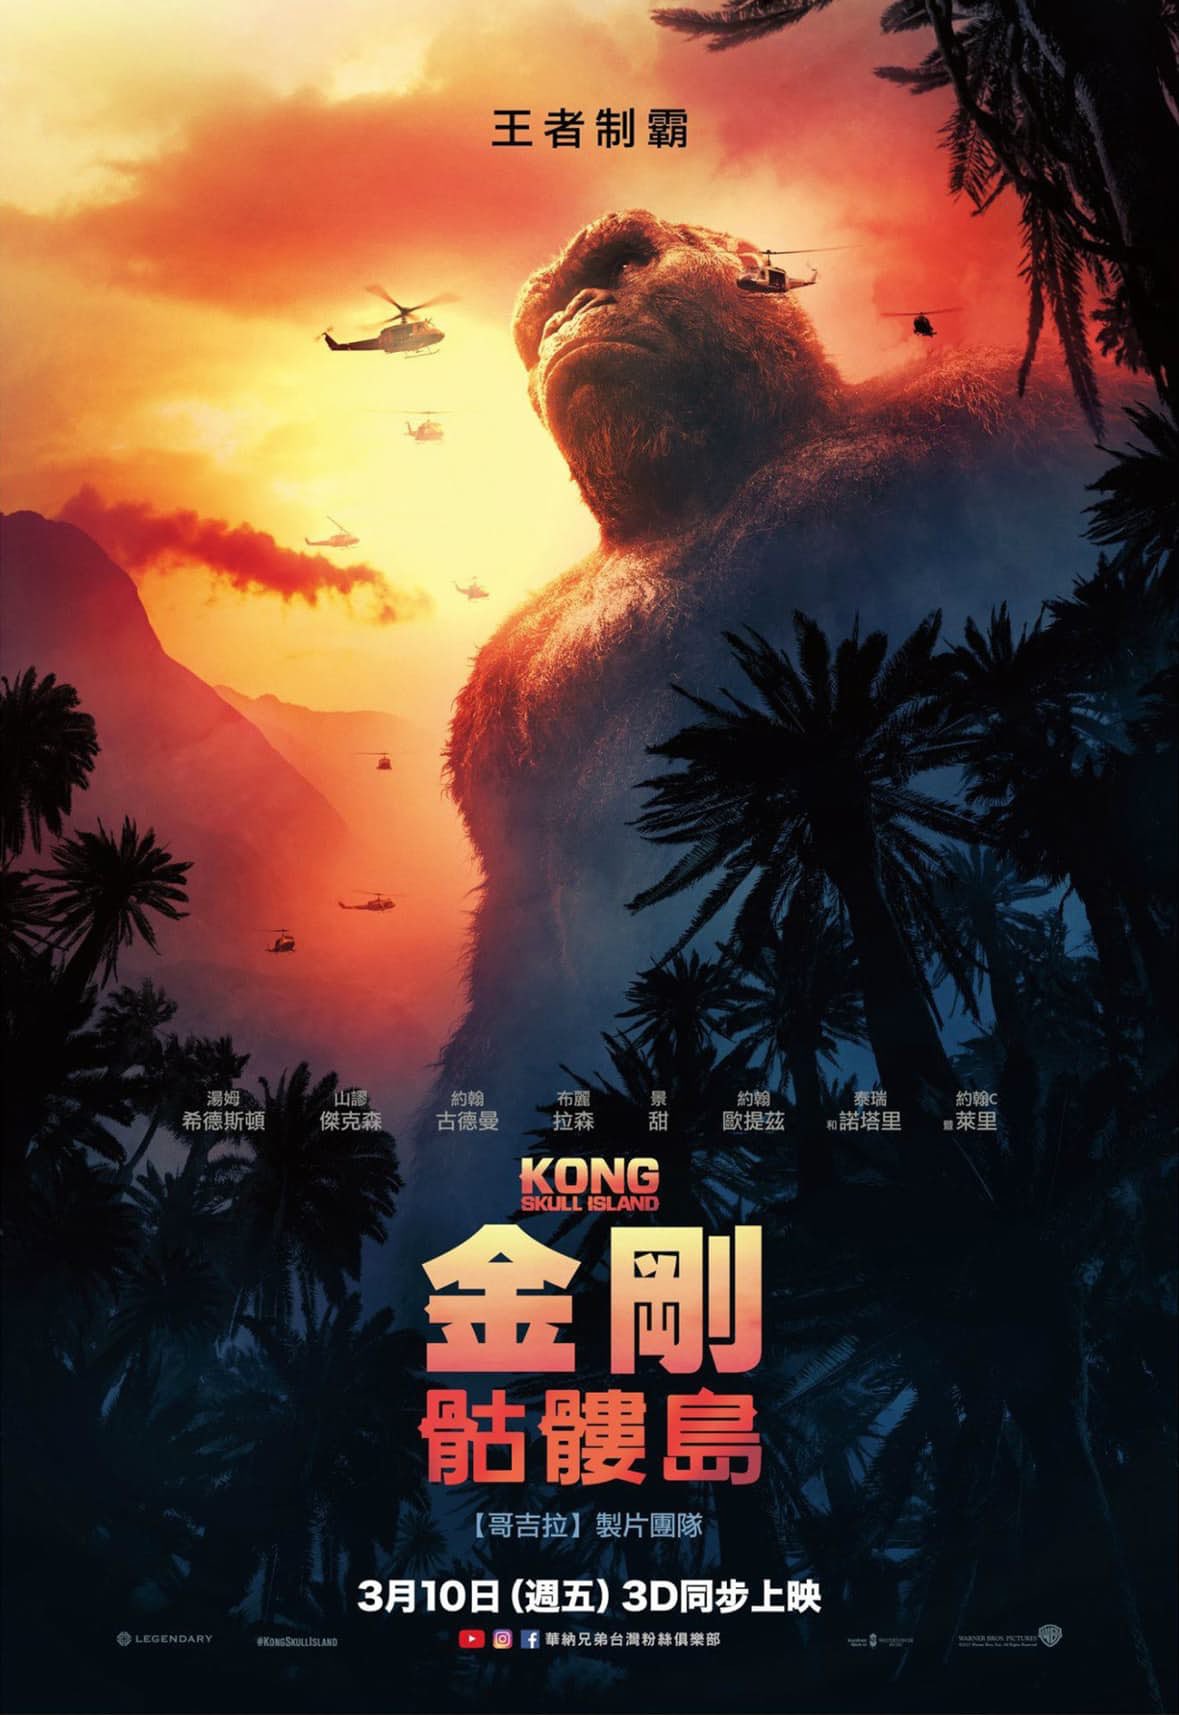 Kong: Skull Island International poster